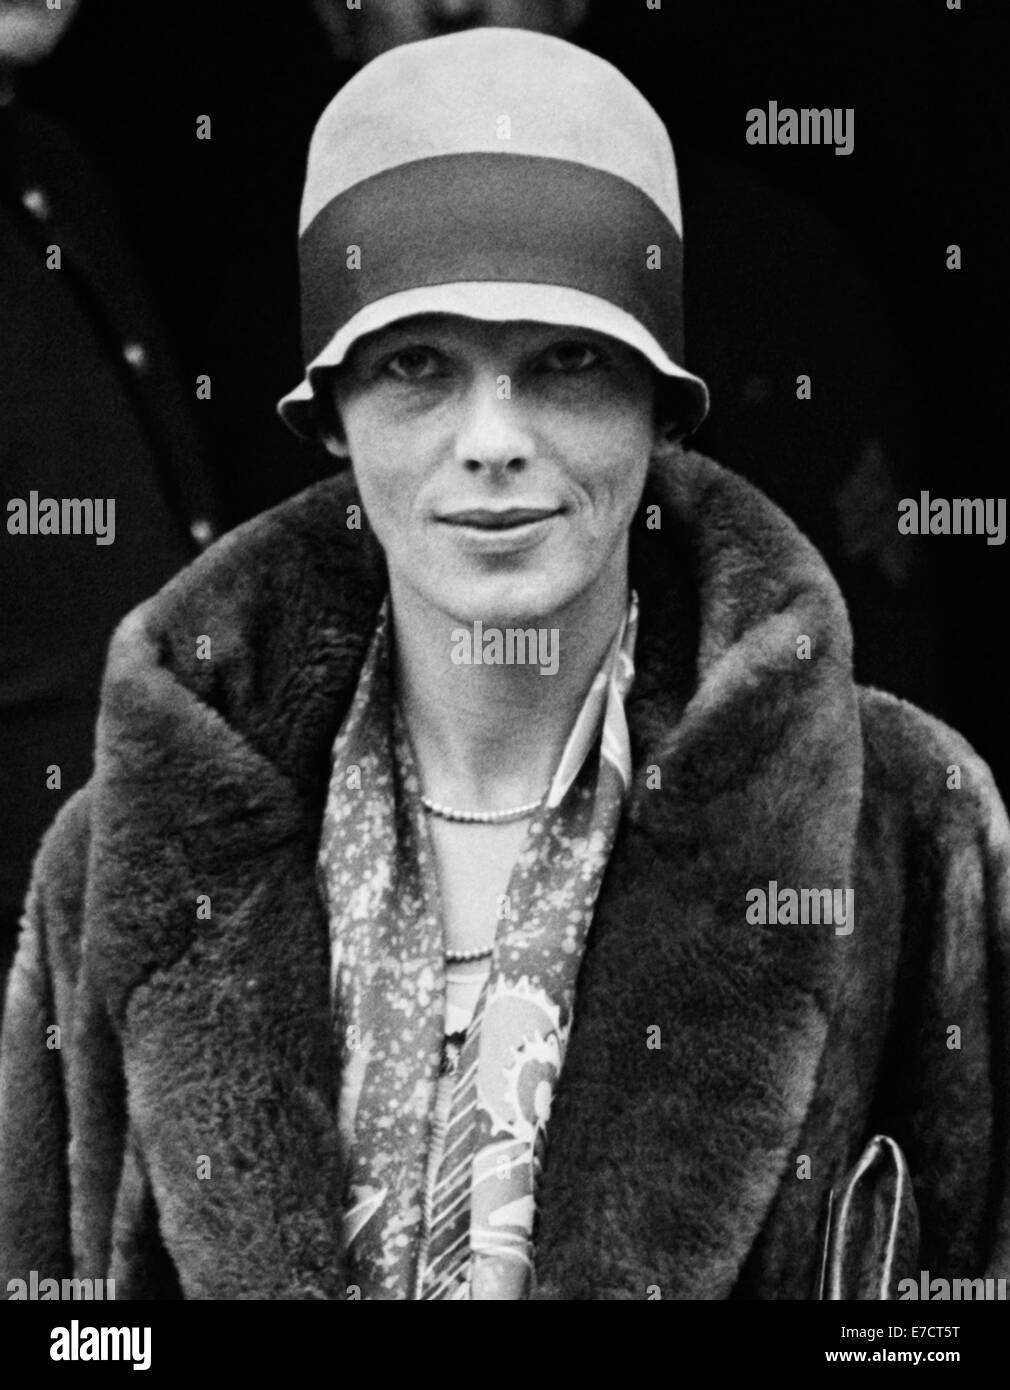 Photo d'époque de la pionnière et auteure de l'aviation américaine Amelia Earhart (1897 – déclarée morte en 1939) – Earhart et son navigateur Fred Noonan ont connu une célèbre disparition en 1937 alors qu'elle essayait de devenir la première femme à effectuer un vol de navigation du globe. Earhart est photographié en novembre 1928 à l'extérieur de la Maison Blanche lors d'une visite du président Calvin Coolidge. Banque D'Images